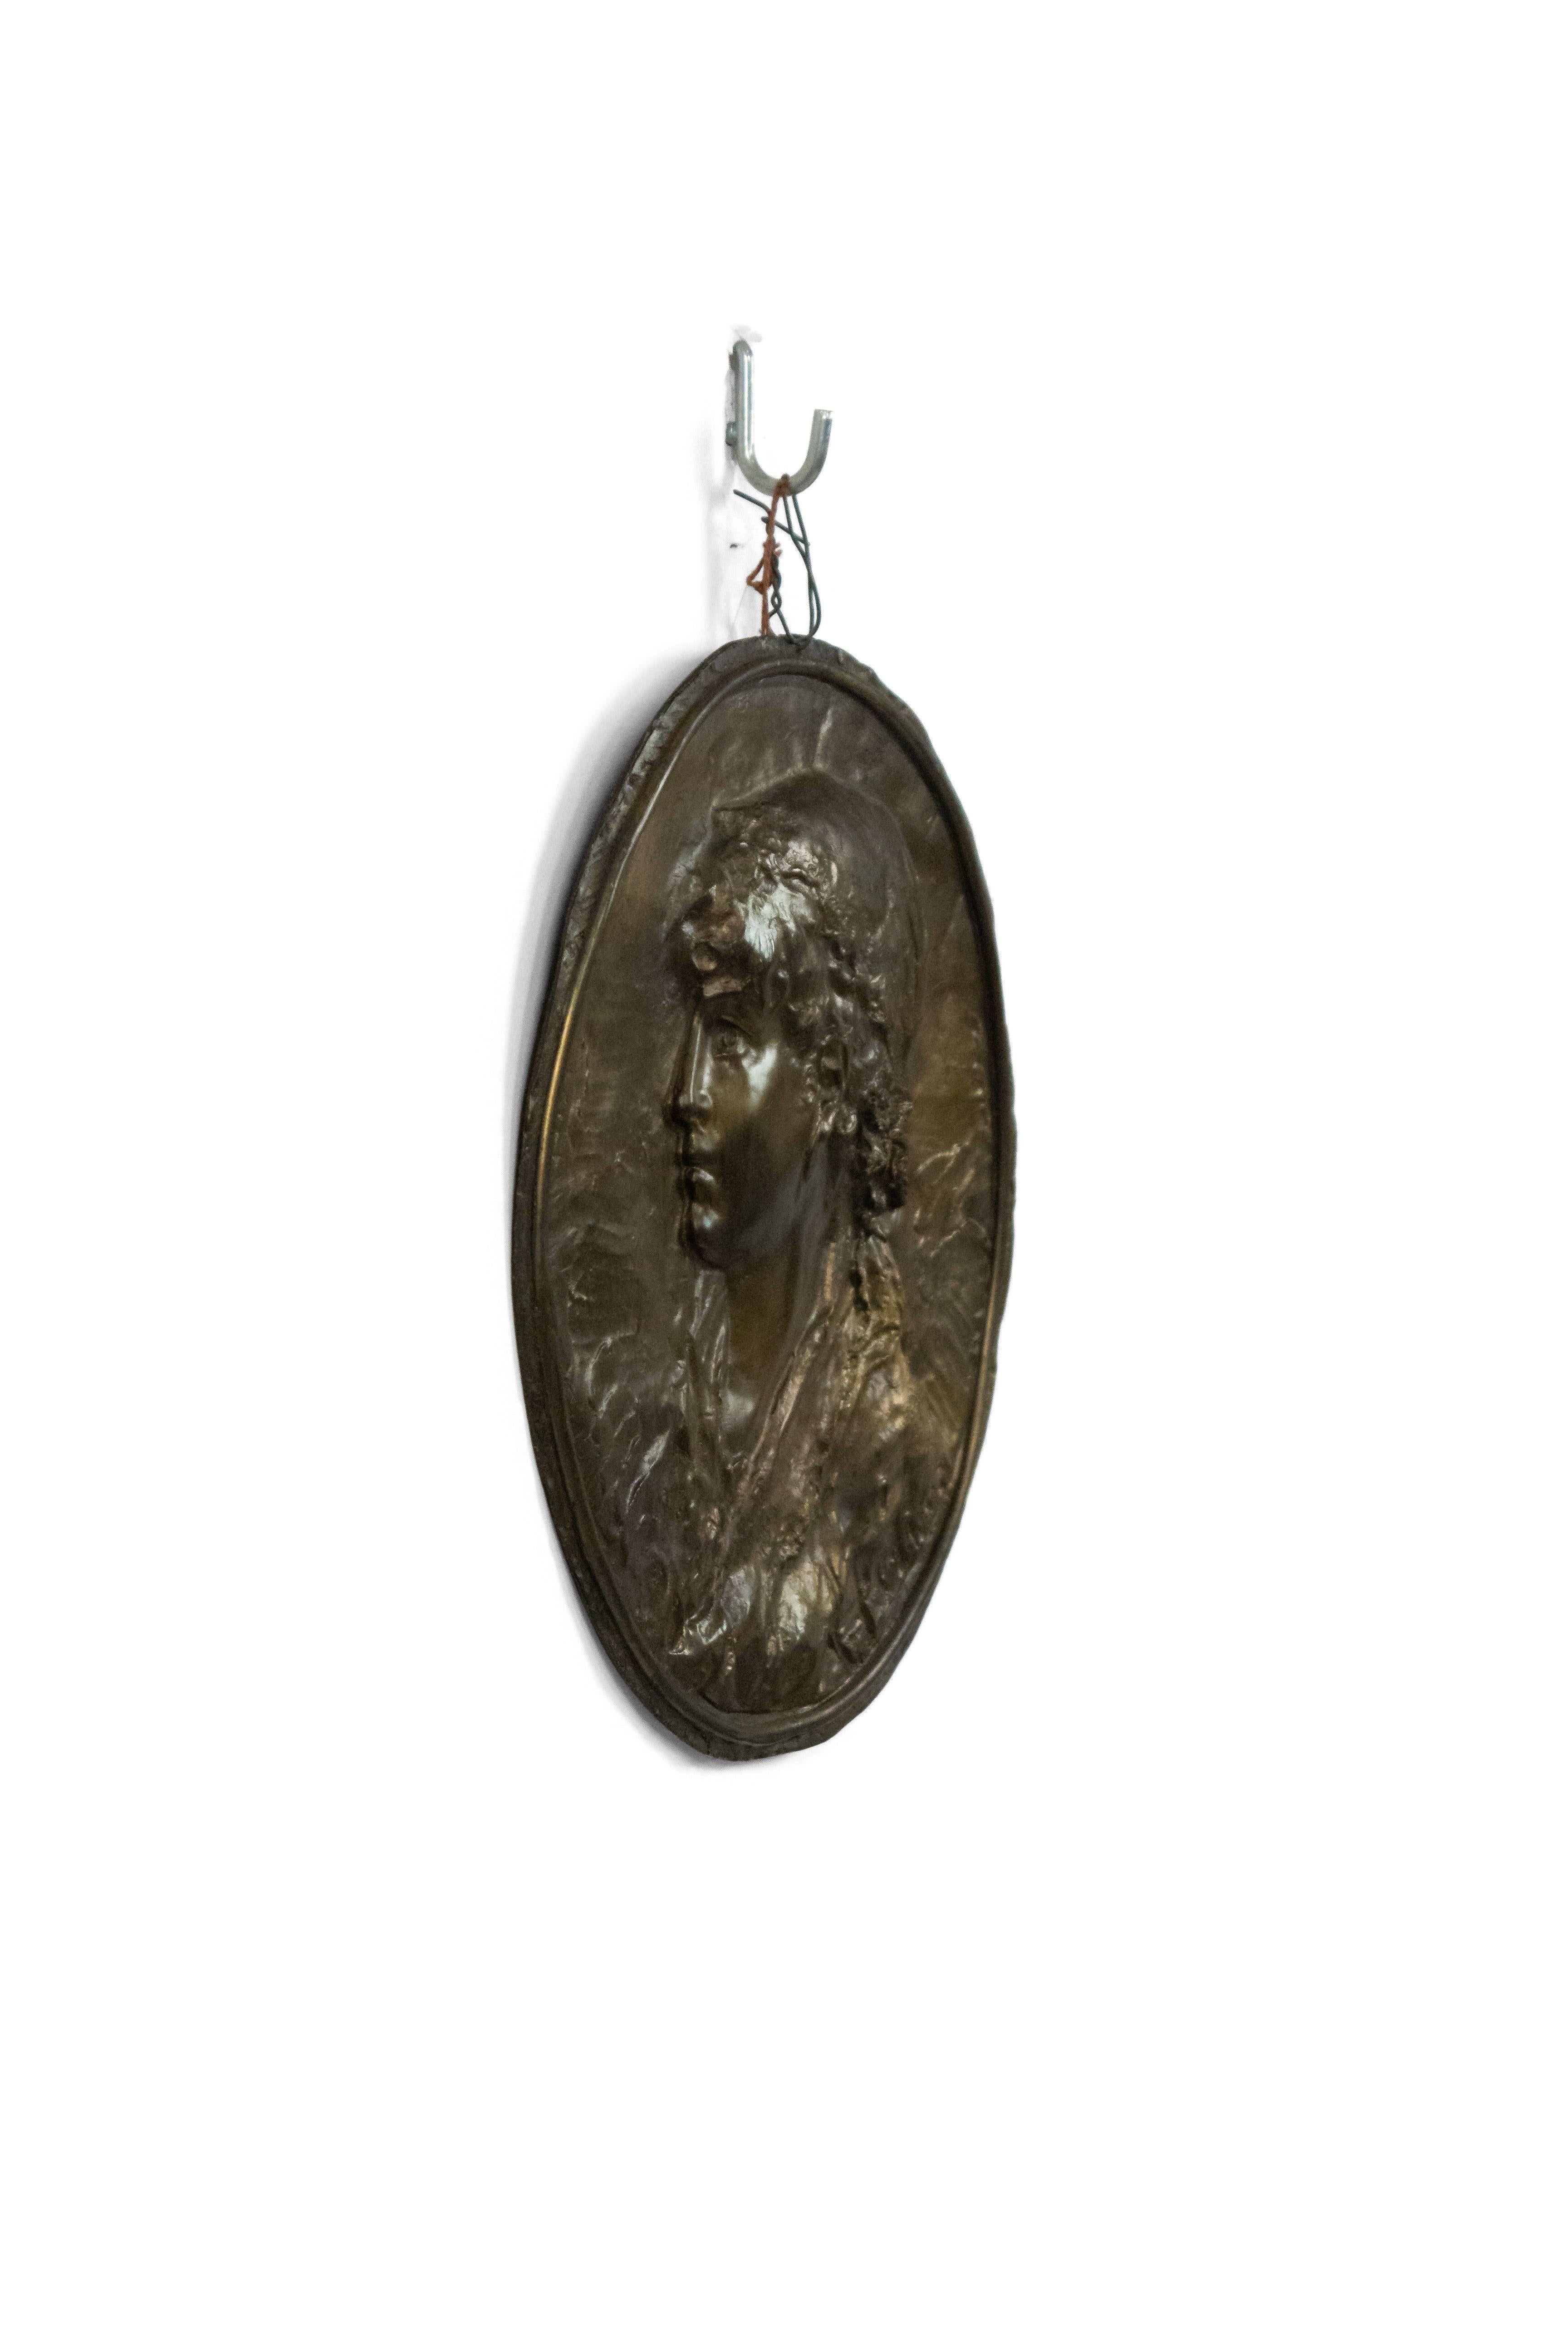 Französisch viktorianischen ovalen Metall Wandtafel von jungen Mädchen Kopf in Relief. (Unterzeichnet).
 